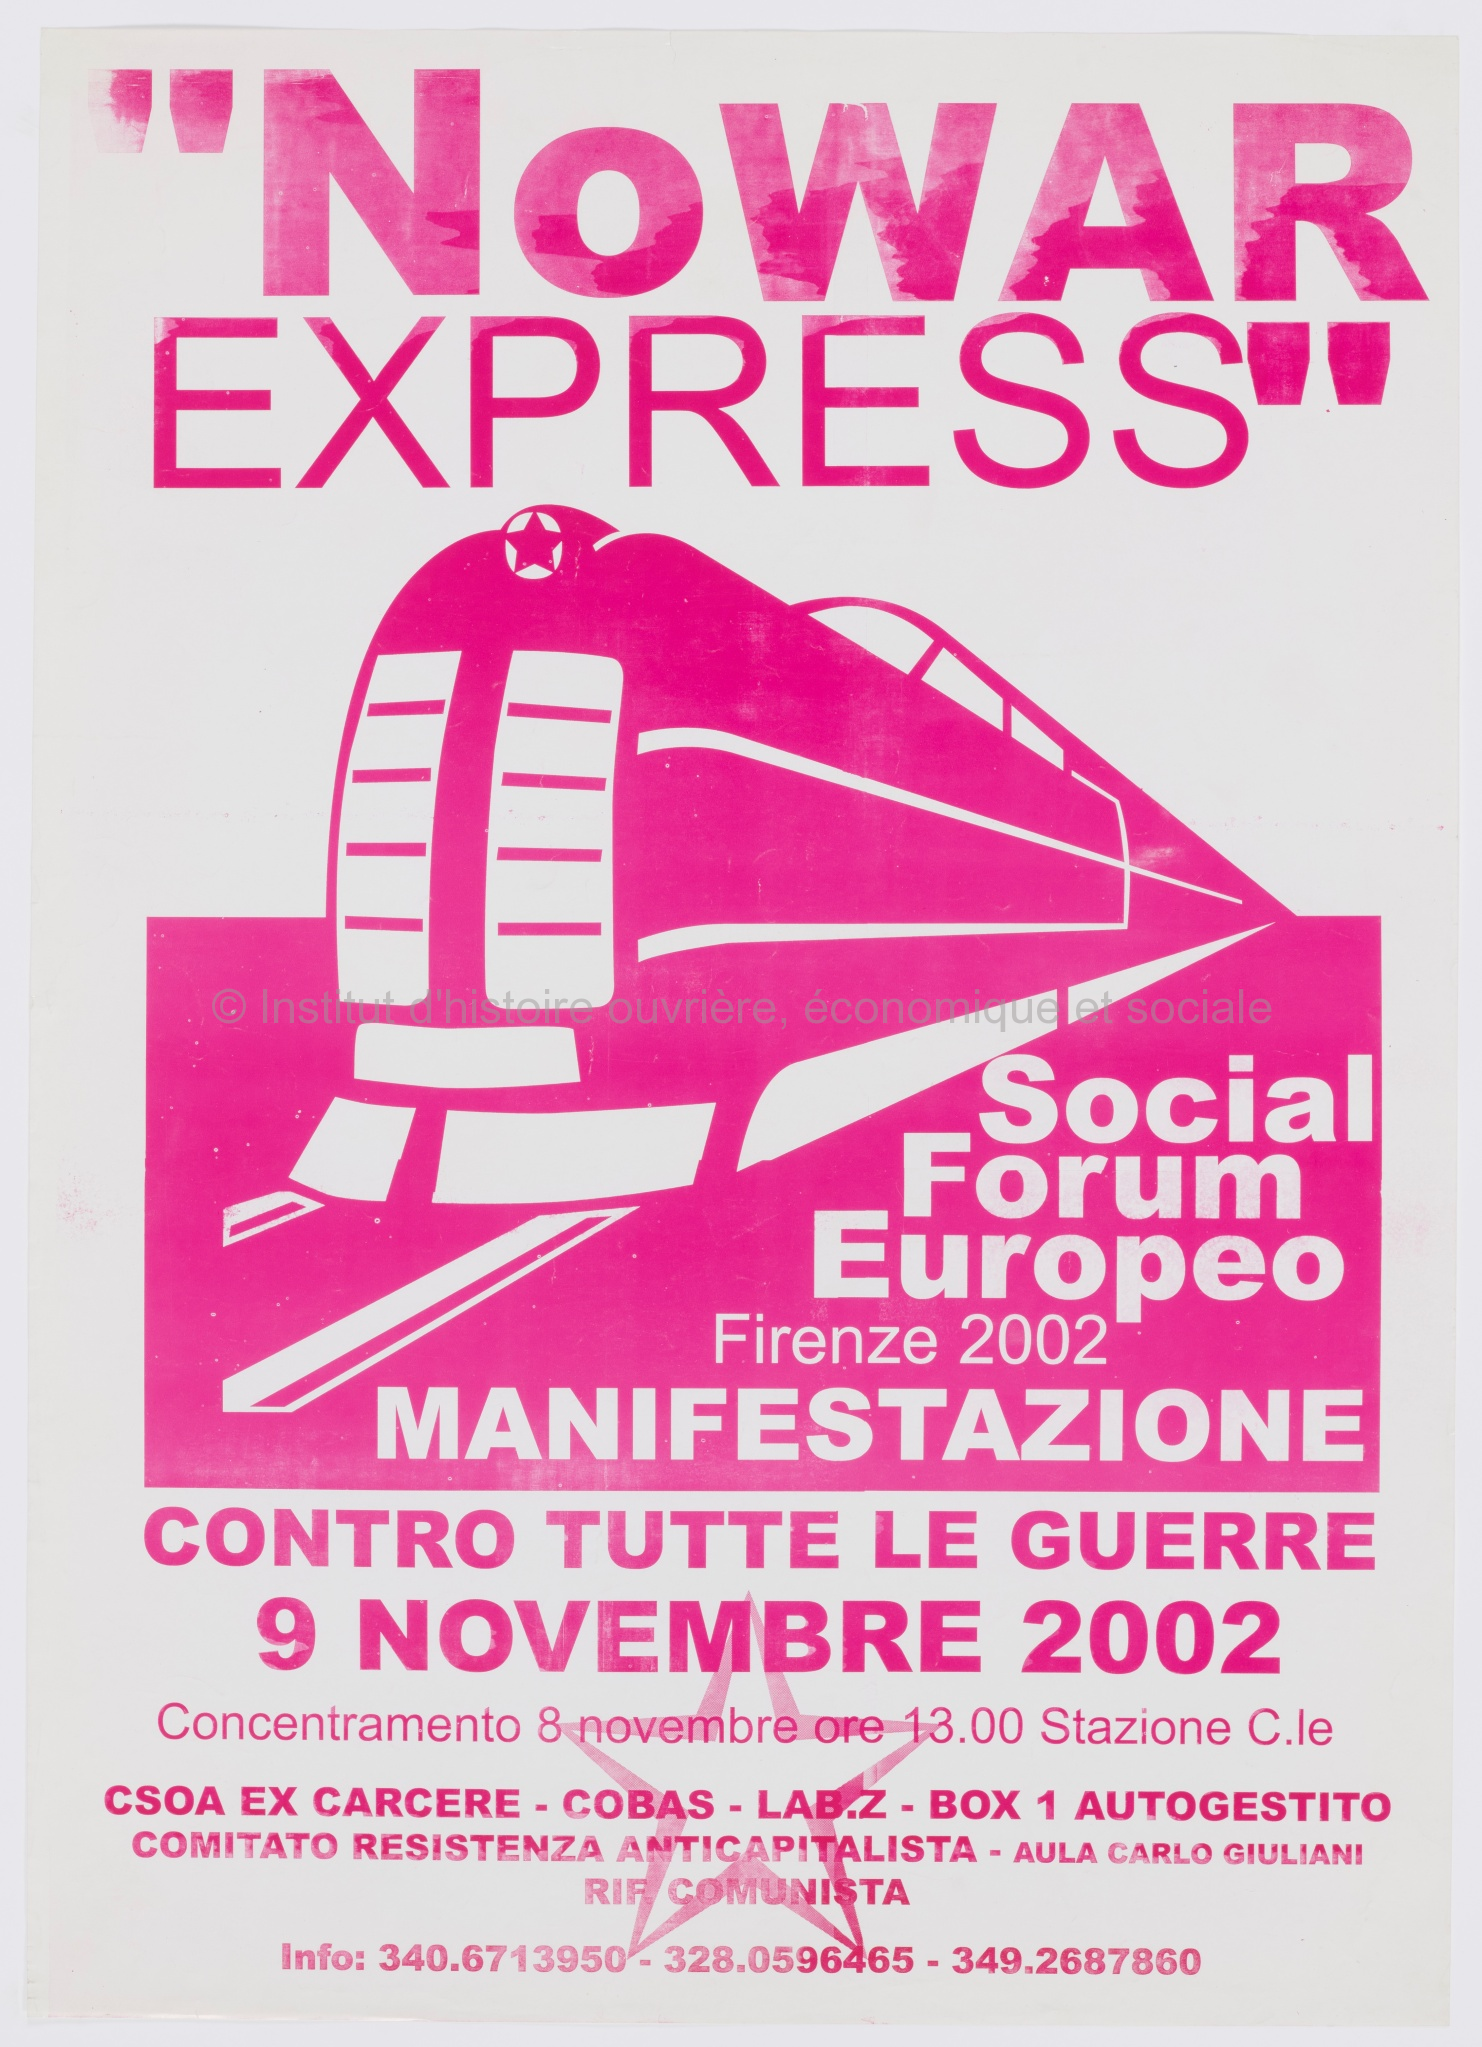 No war express: Social forum européo, Firenze 2002 : manifestazione contre tutte le guerre, 9 novembre 2002